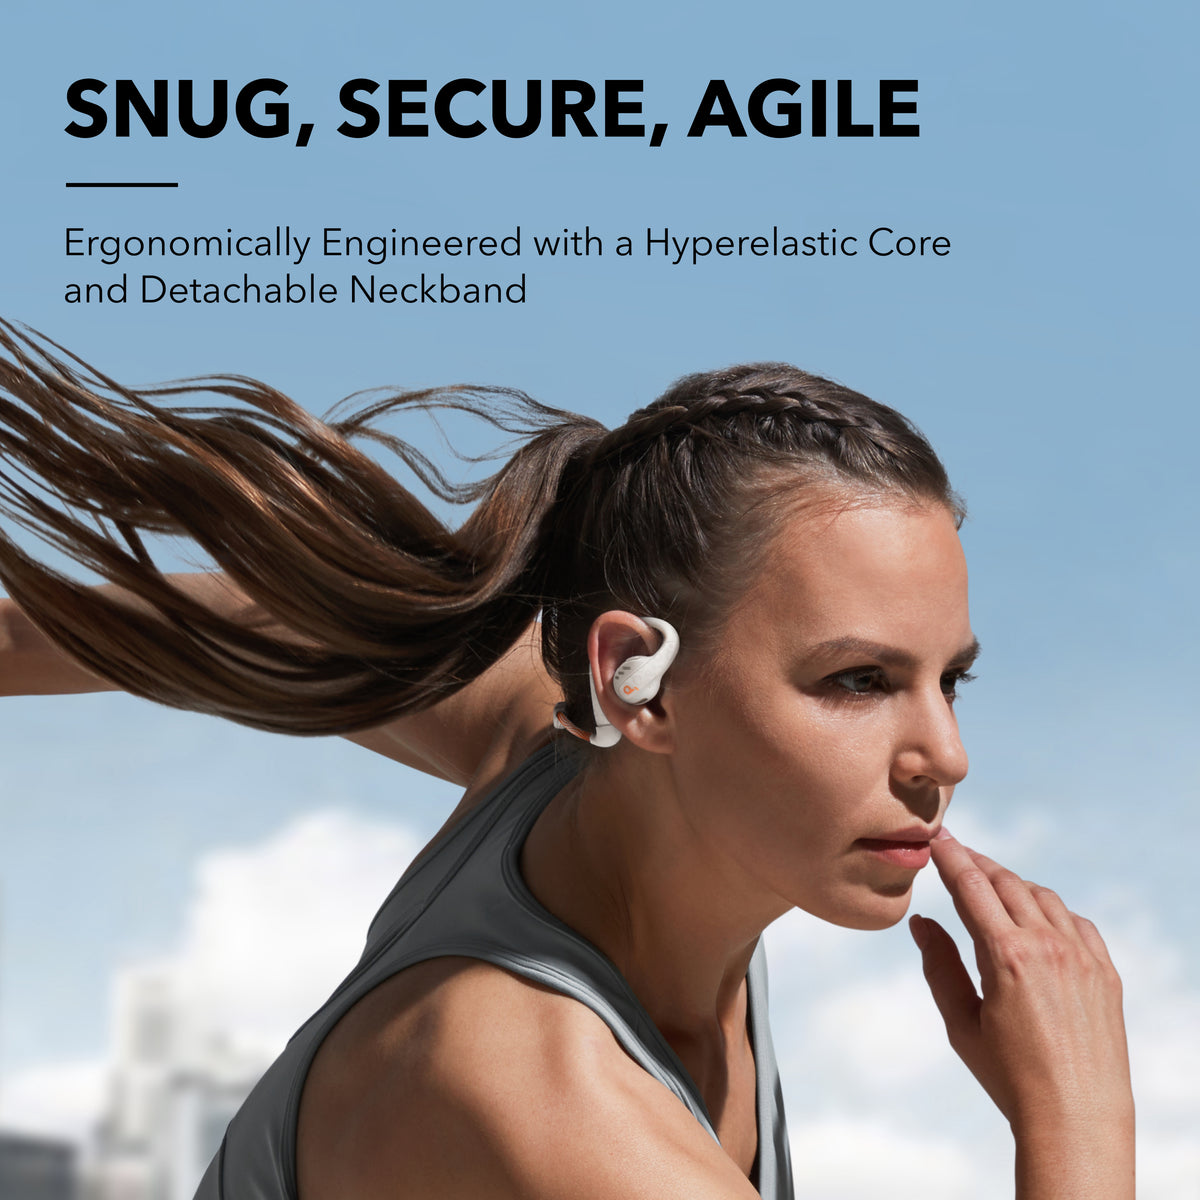 AeroFit Pro | Secure Open-Ear Sport Earbuds